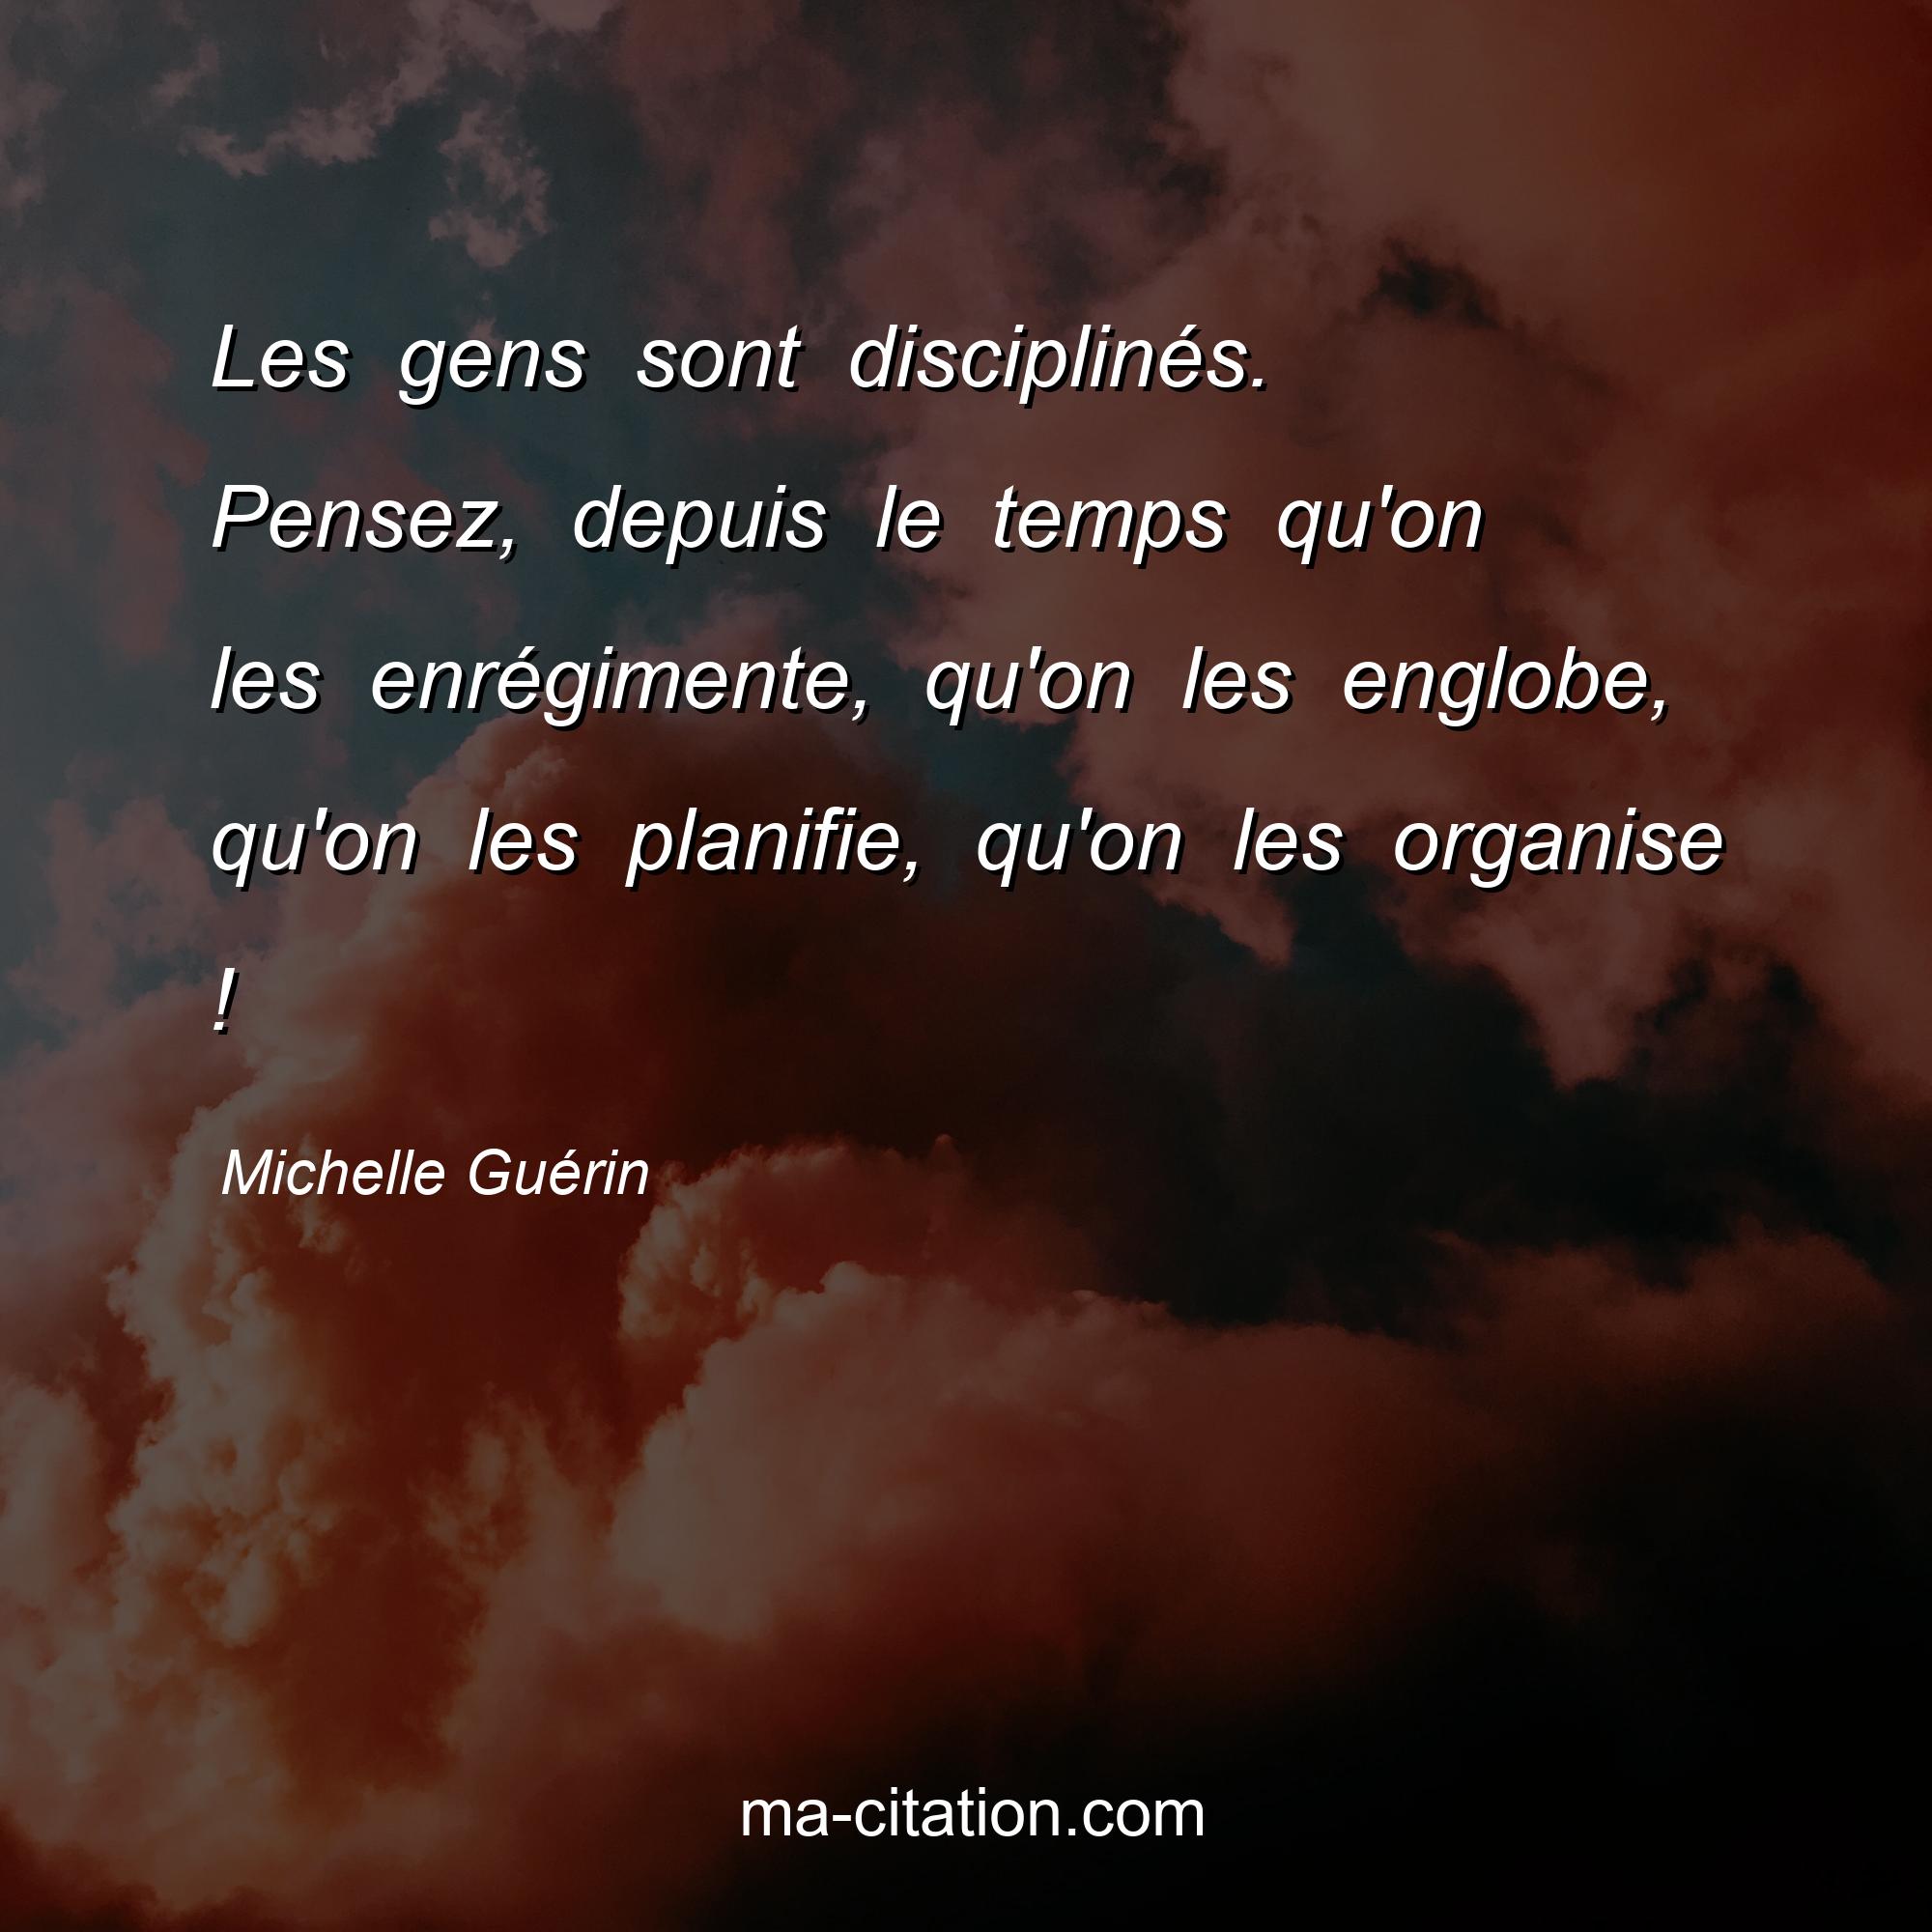 Michelle Guérin : Les gens sont disciplinés. Pensez, depuis le temps qu'on les enrégimente, qu'on les englobe, qu'on les planifie, qu'on les organise !